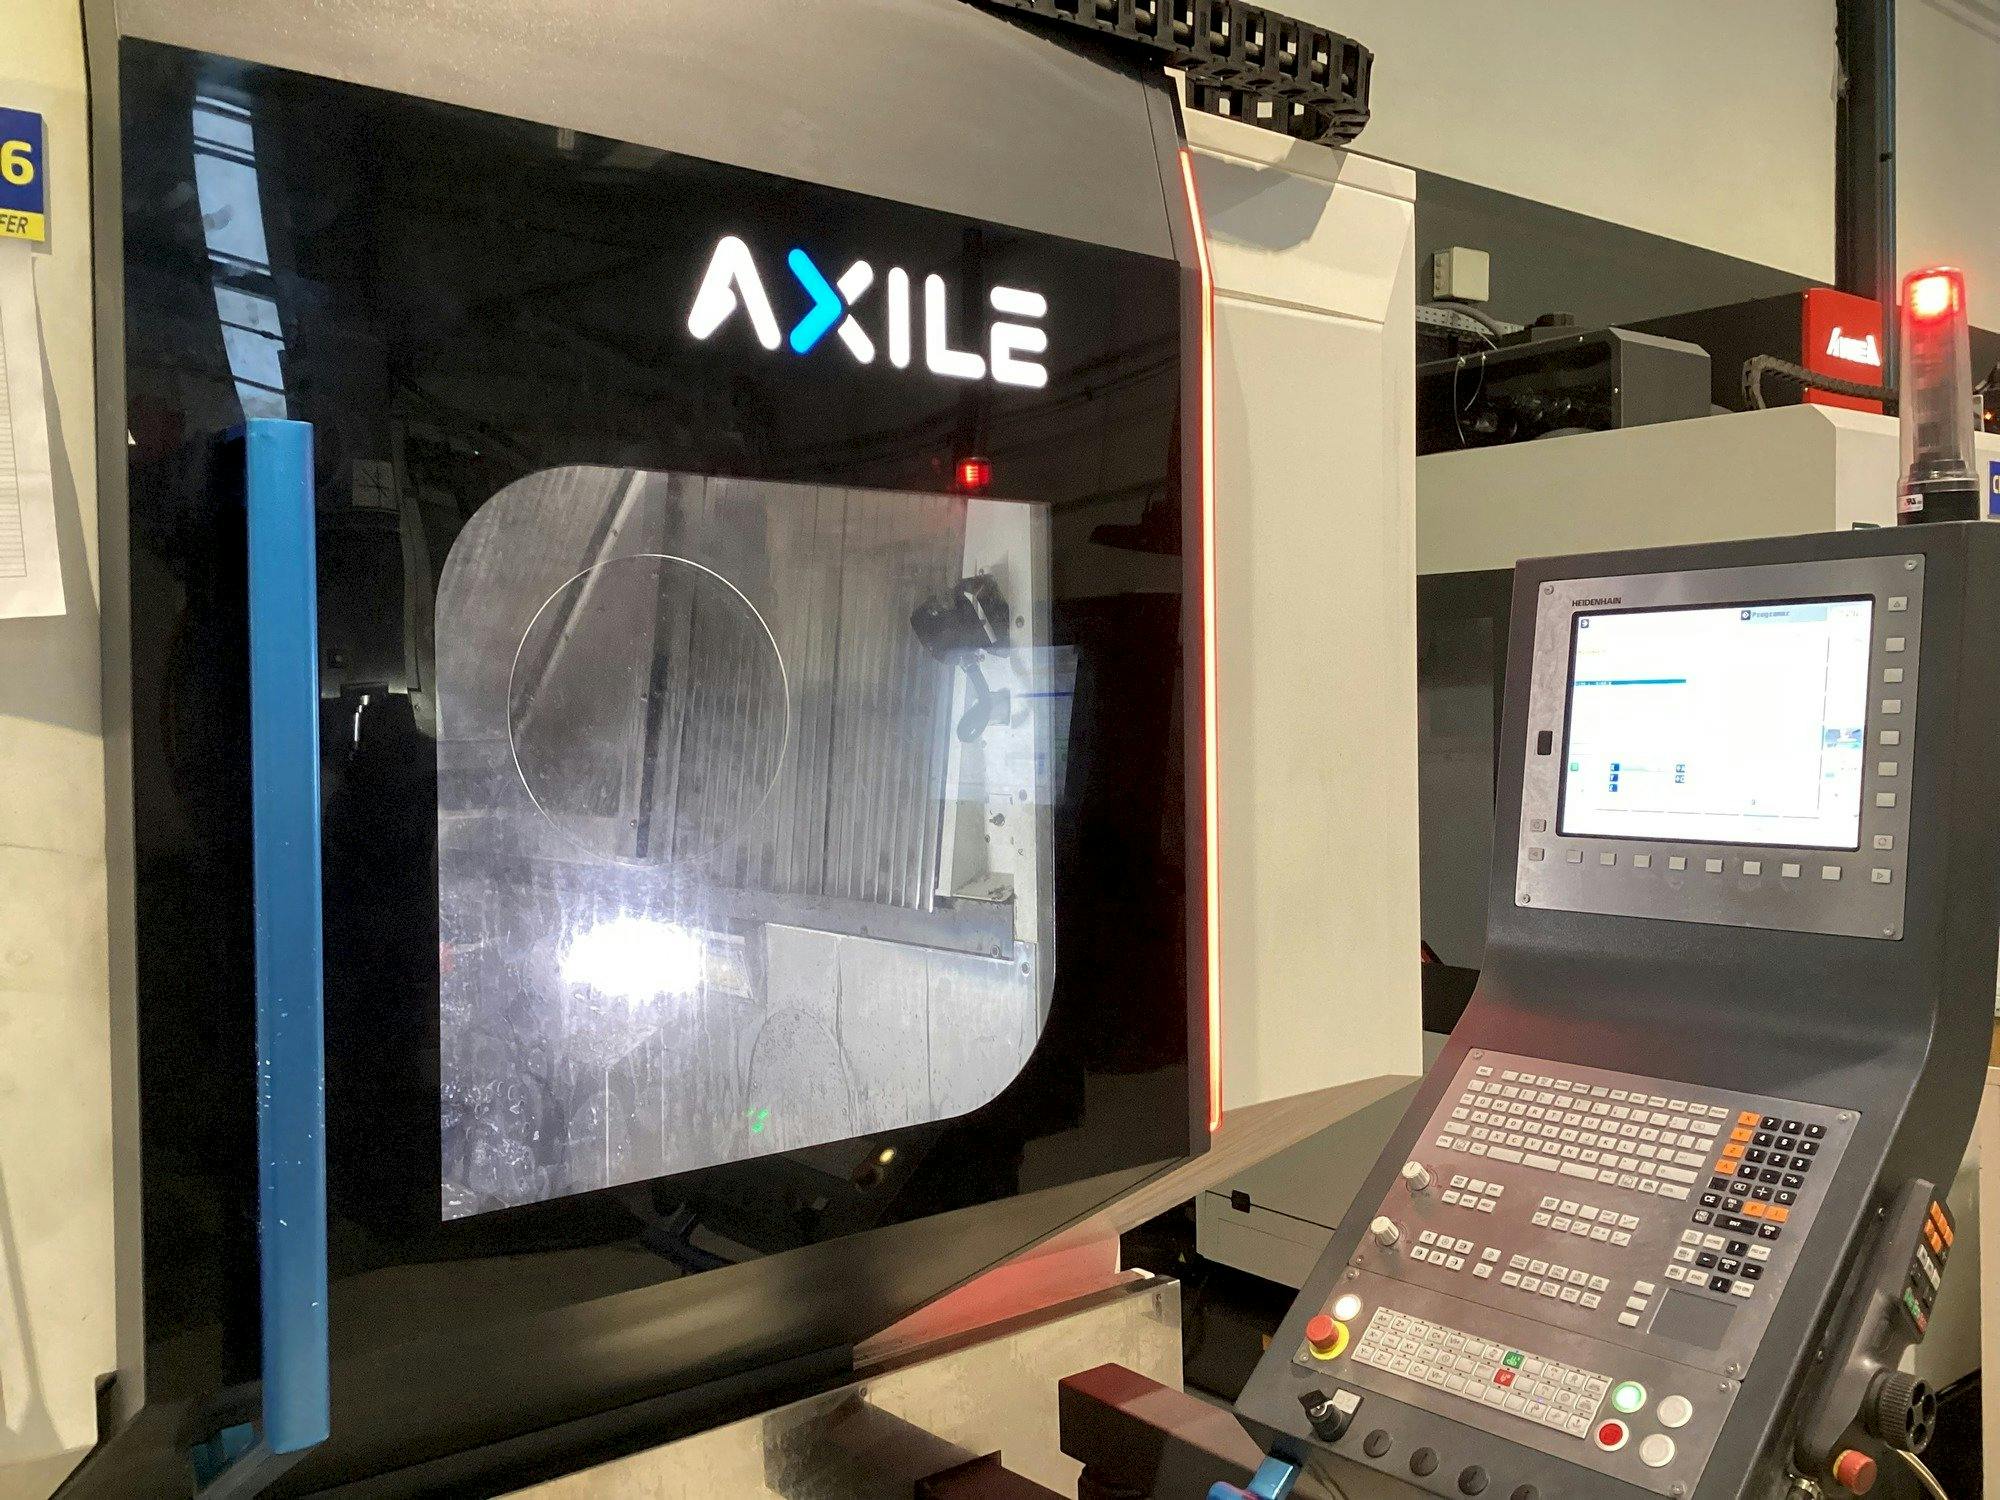 Vista frontal de la máquina AXILE G6